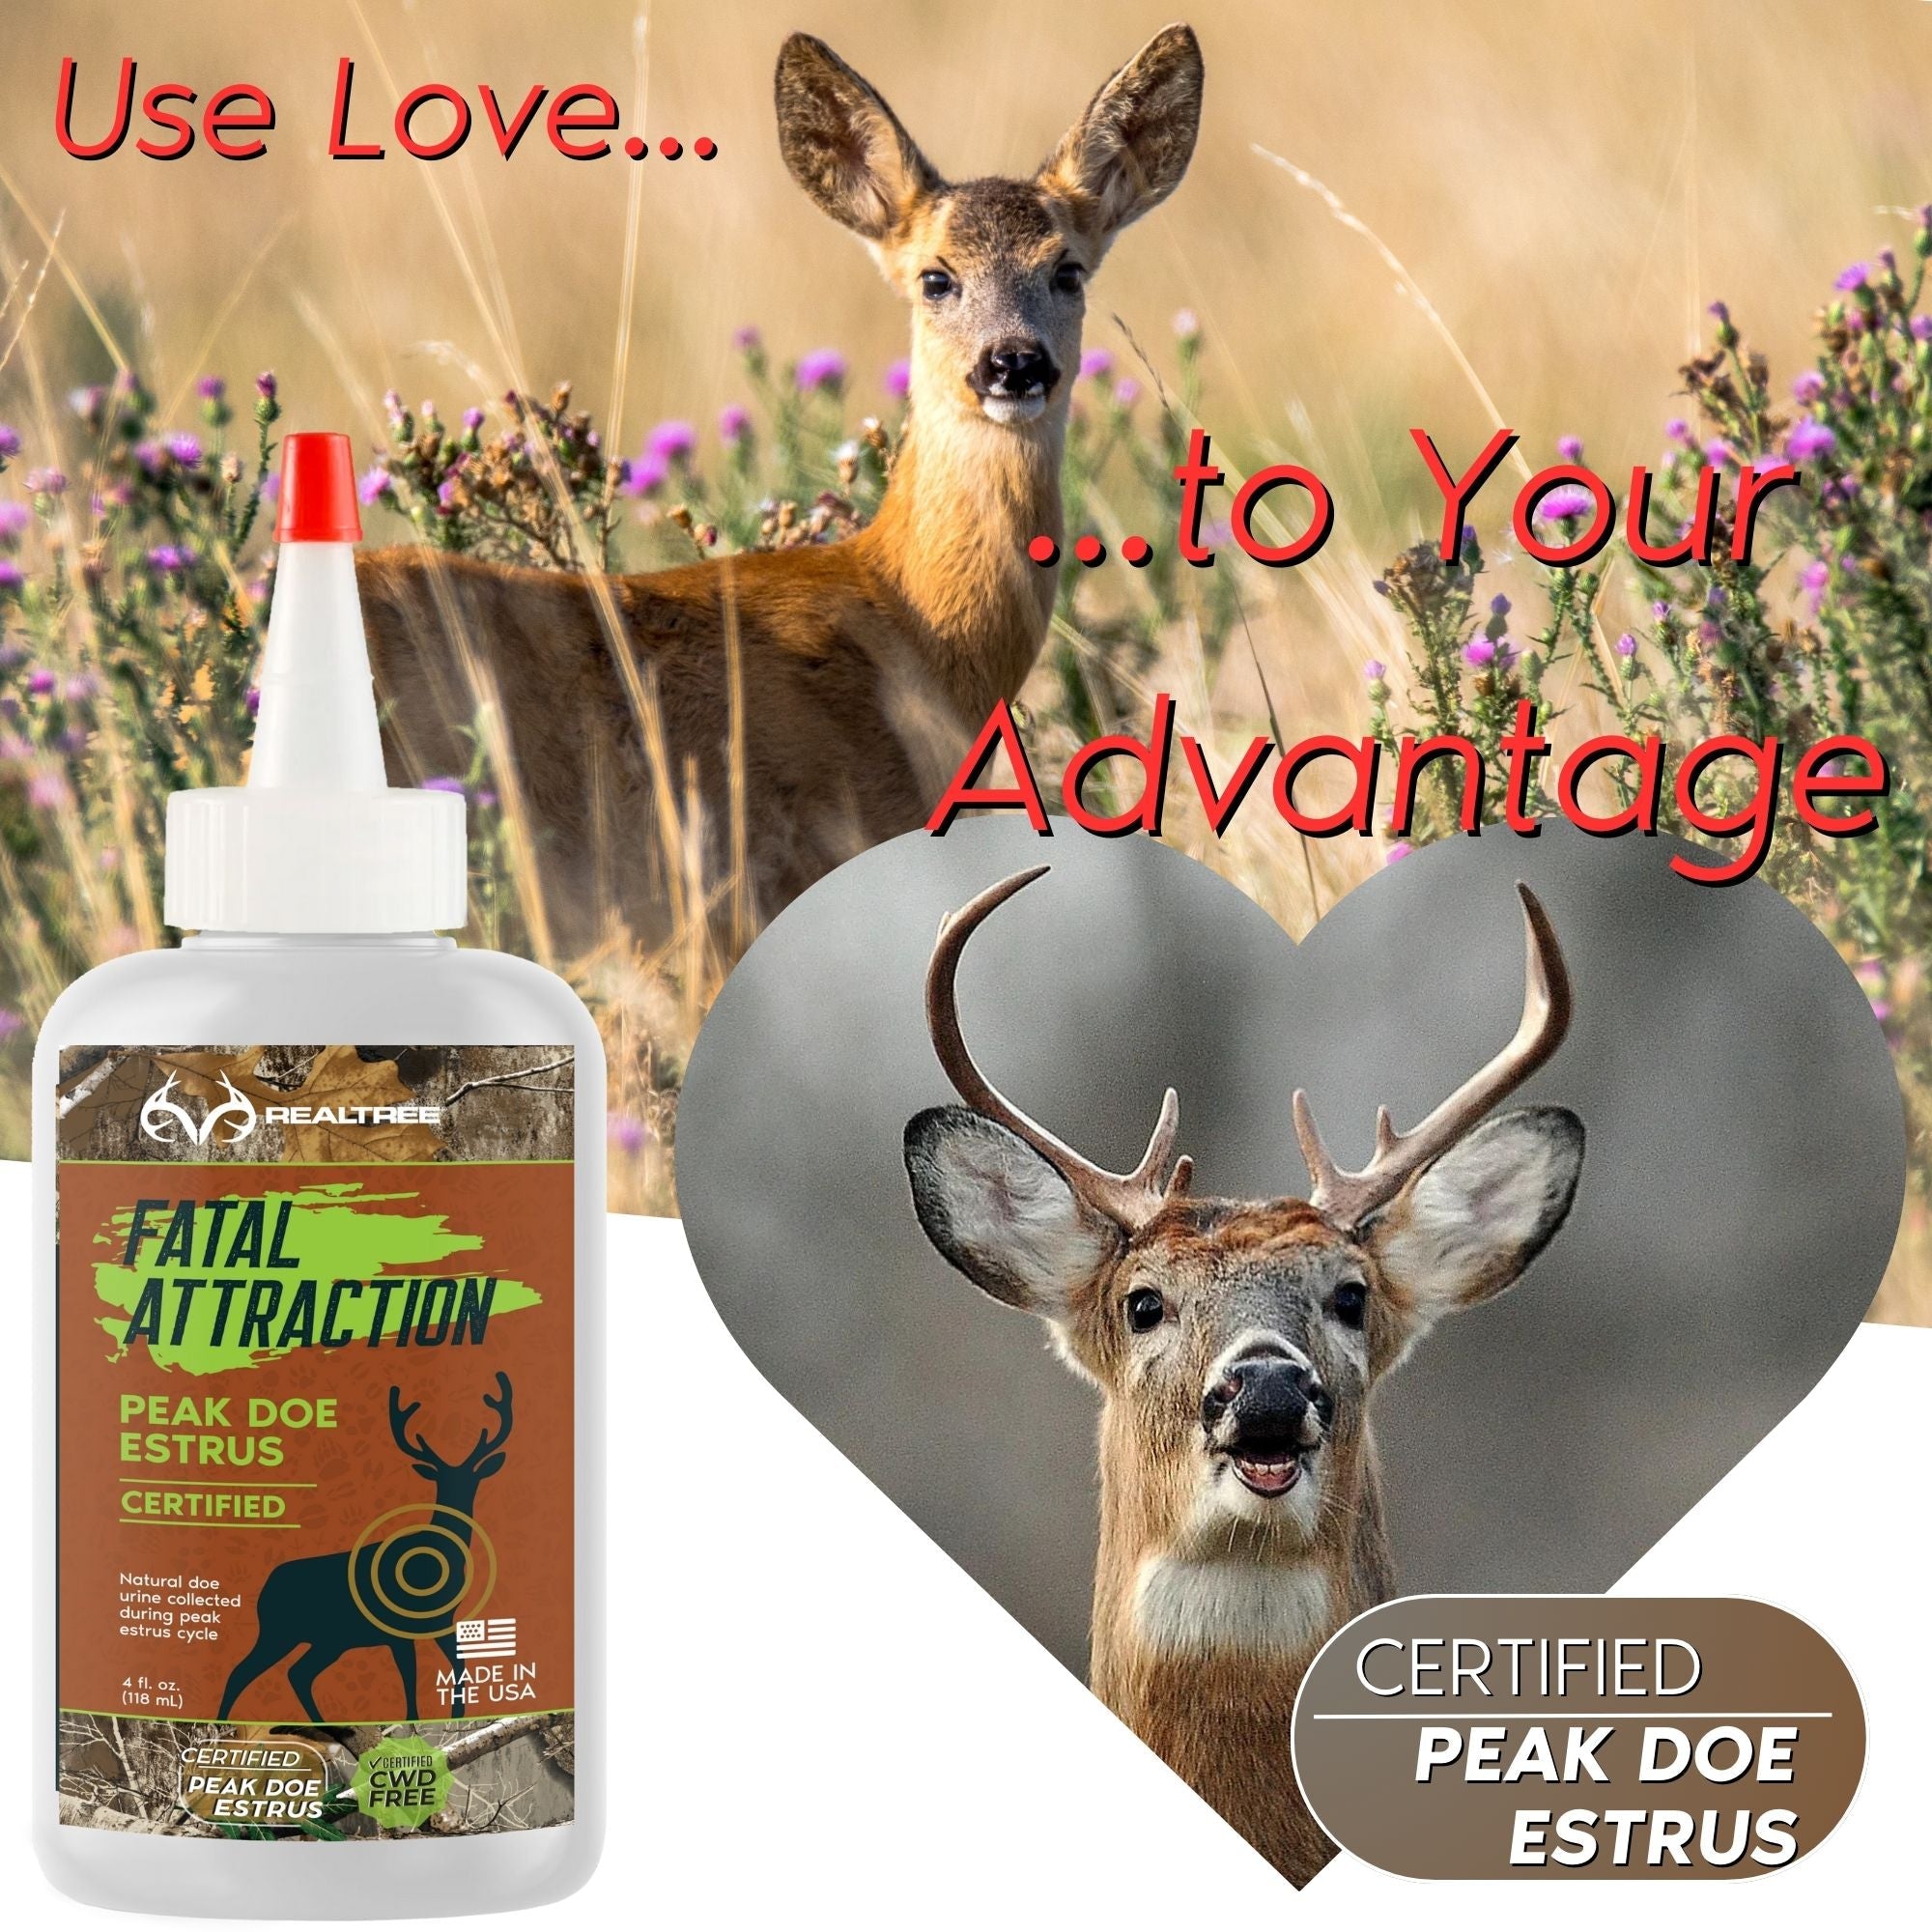 Realtree Buckmaster Bundle; Insect Repellent PLUS Deer Attractants